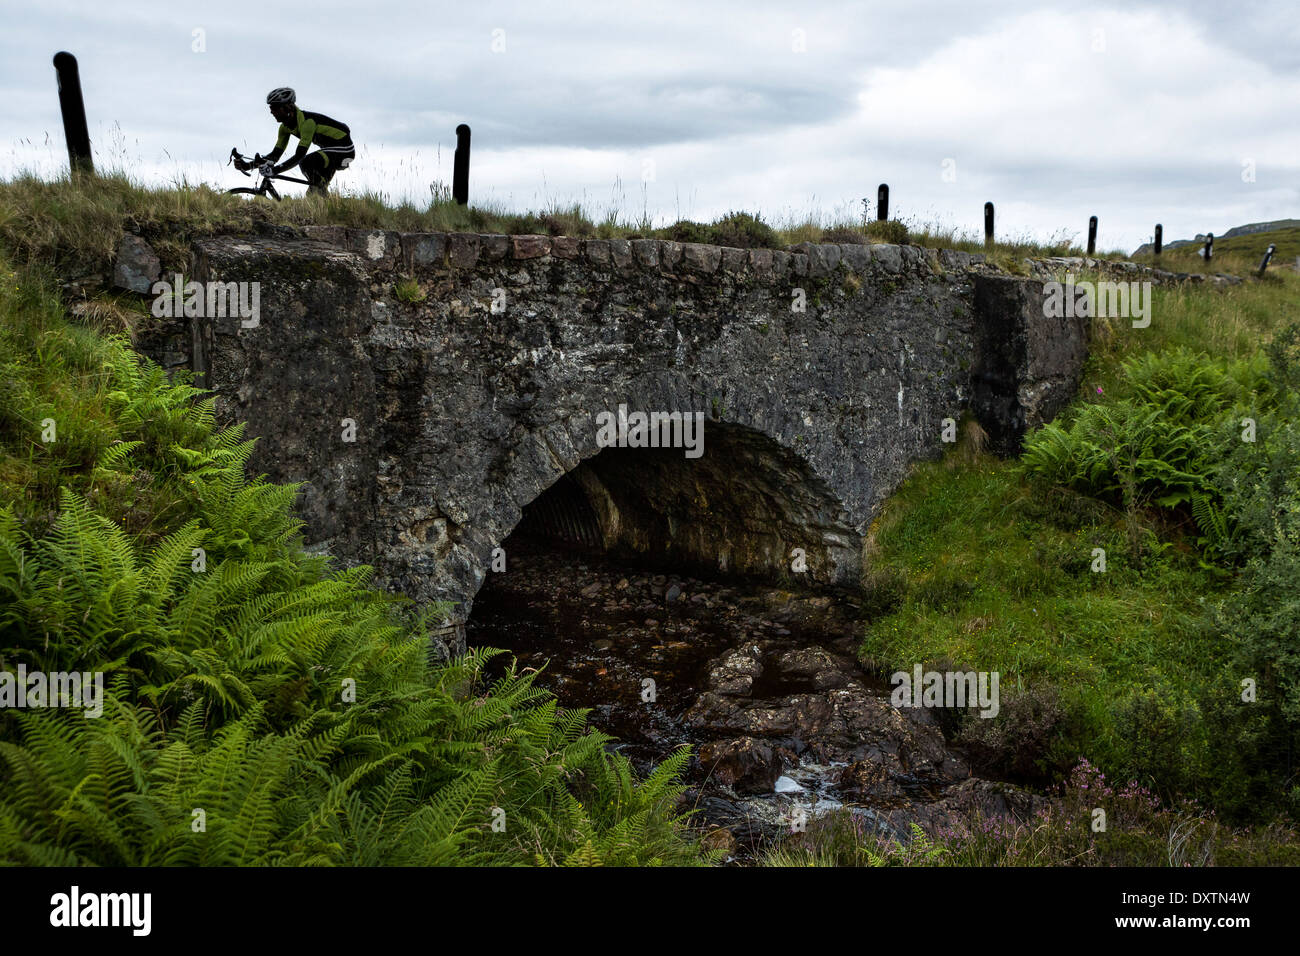 Un cycliste traverse un pont sur la route la plus longue ascension en Lochcarron, Ecosse Banque D'Images